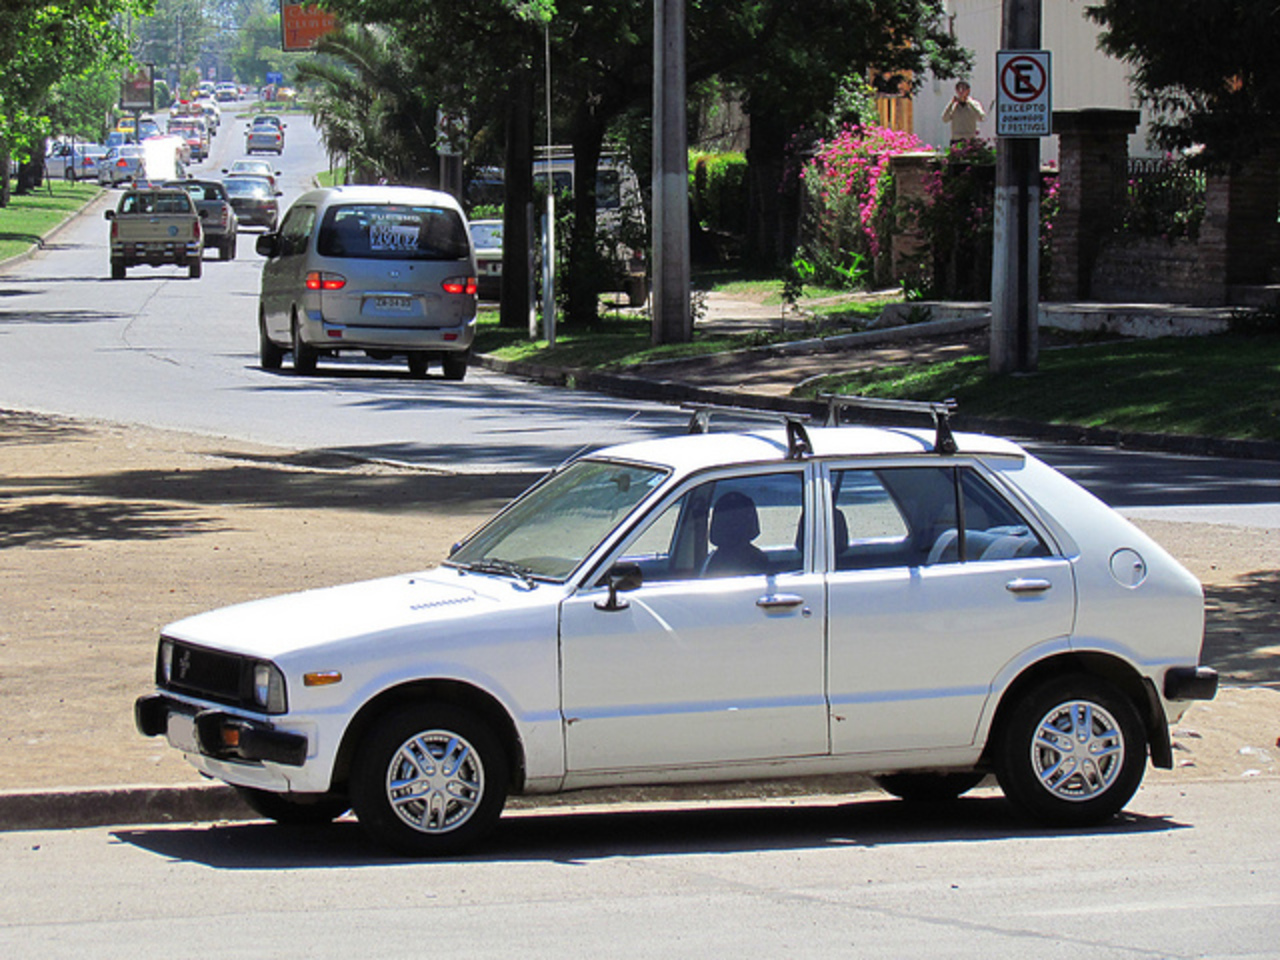 Daihatsu Charade G20 1981 | Flickr - Photo Sharing!